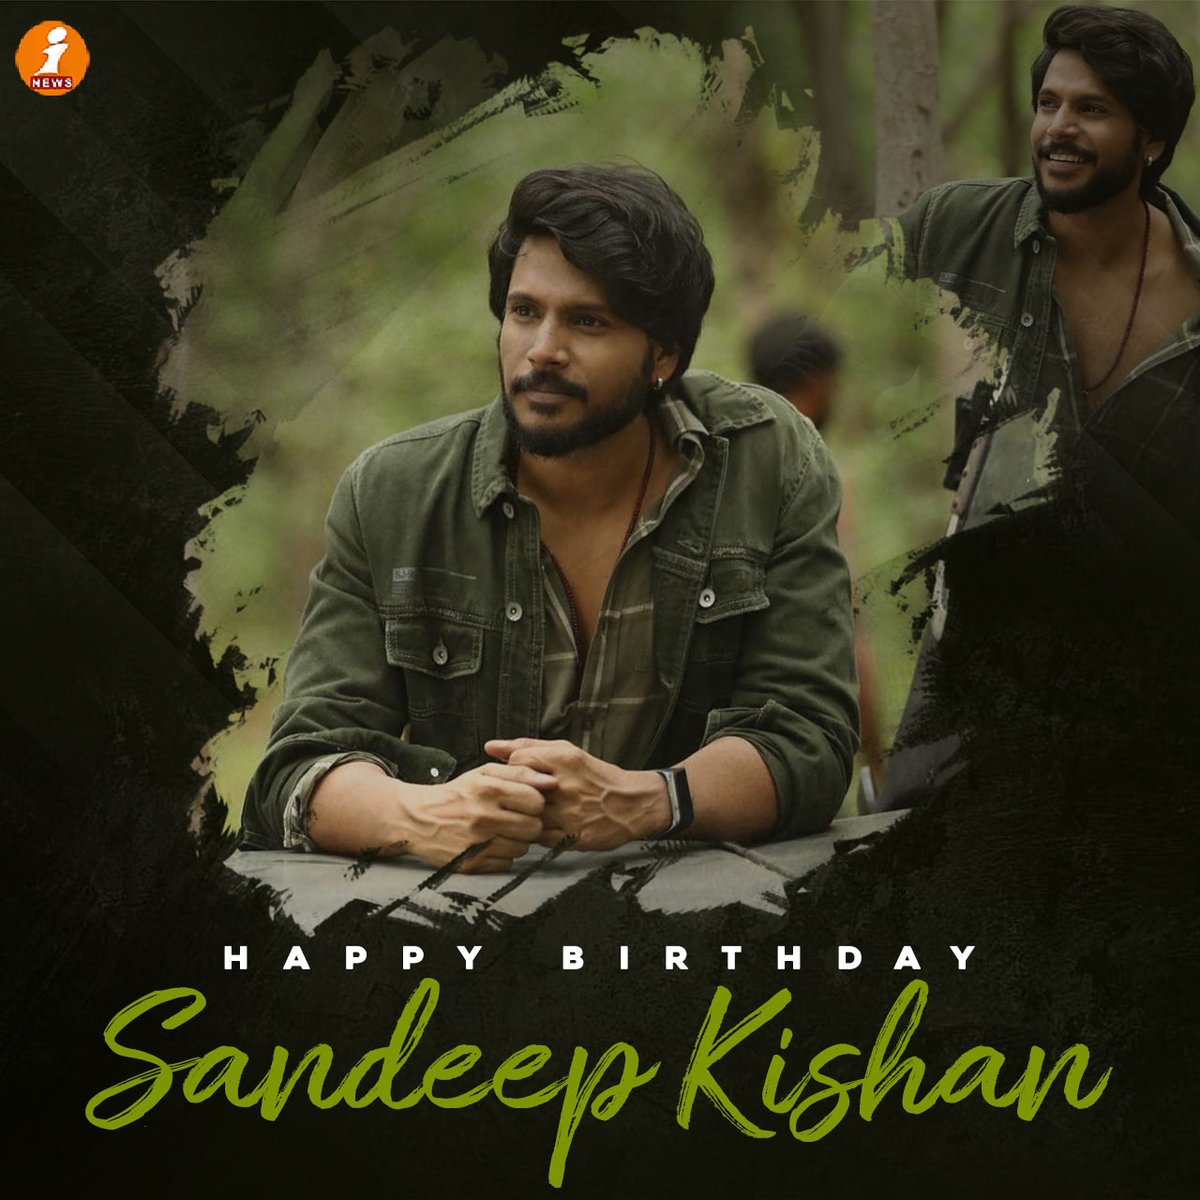 Wishing @sundeepkishan Kishan a very Happy Birthday

#iNews #HBD #happybirthday #sandeepkishan #actorsandeepkishan #indianactor